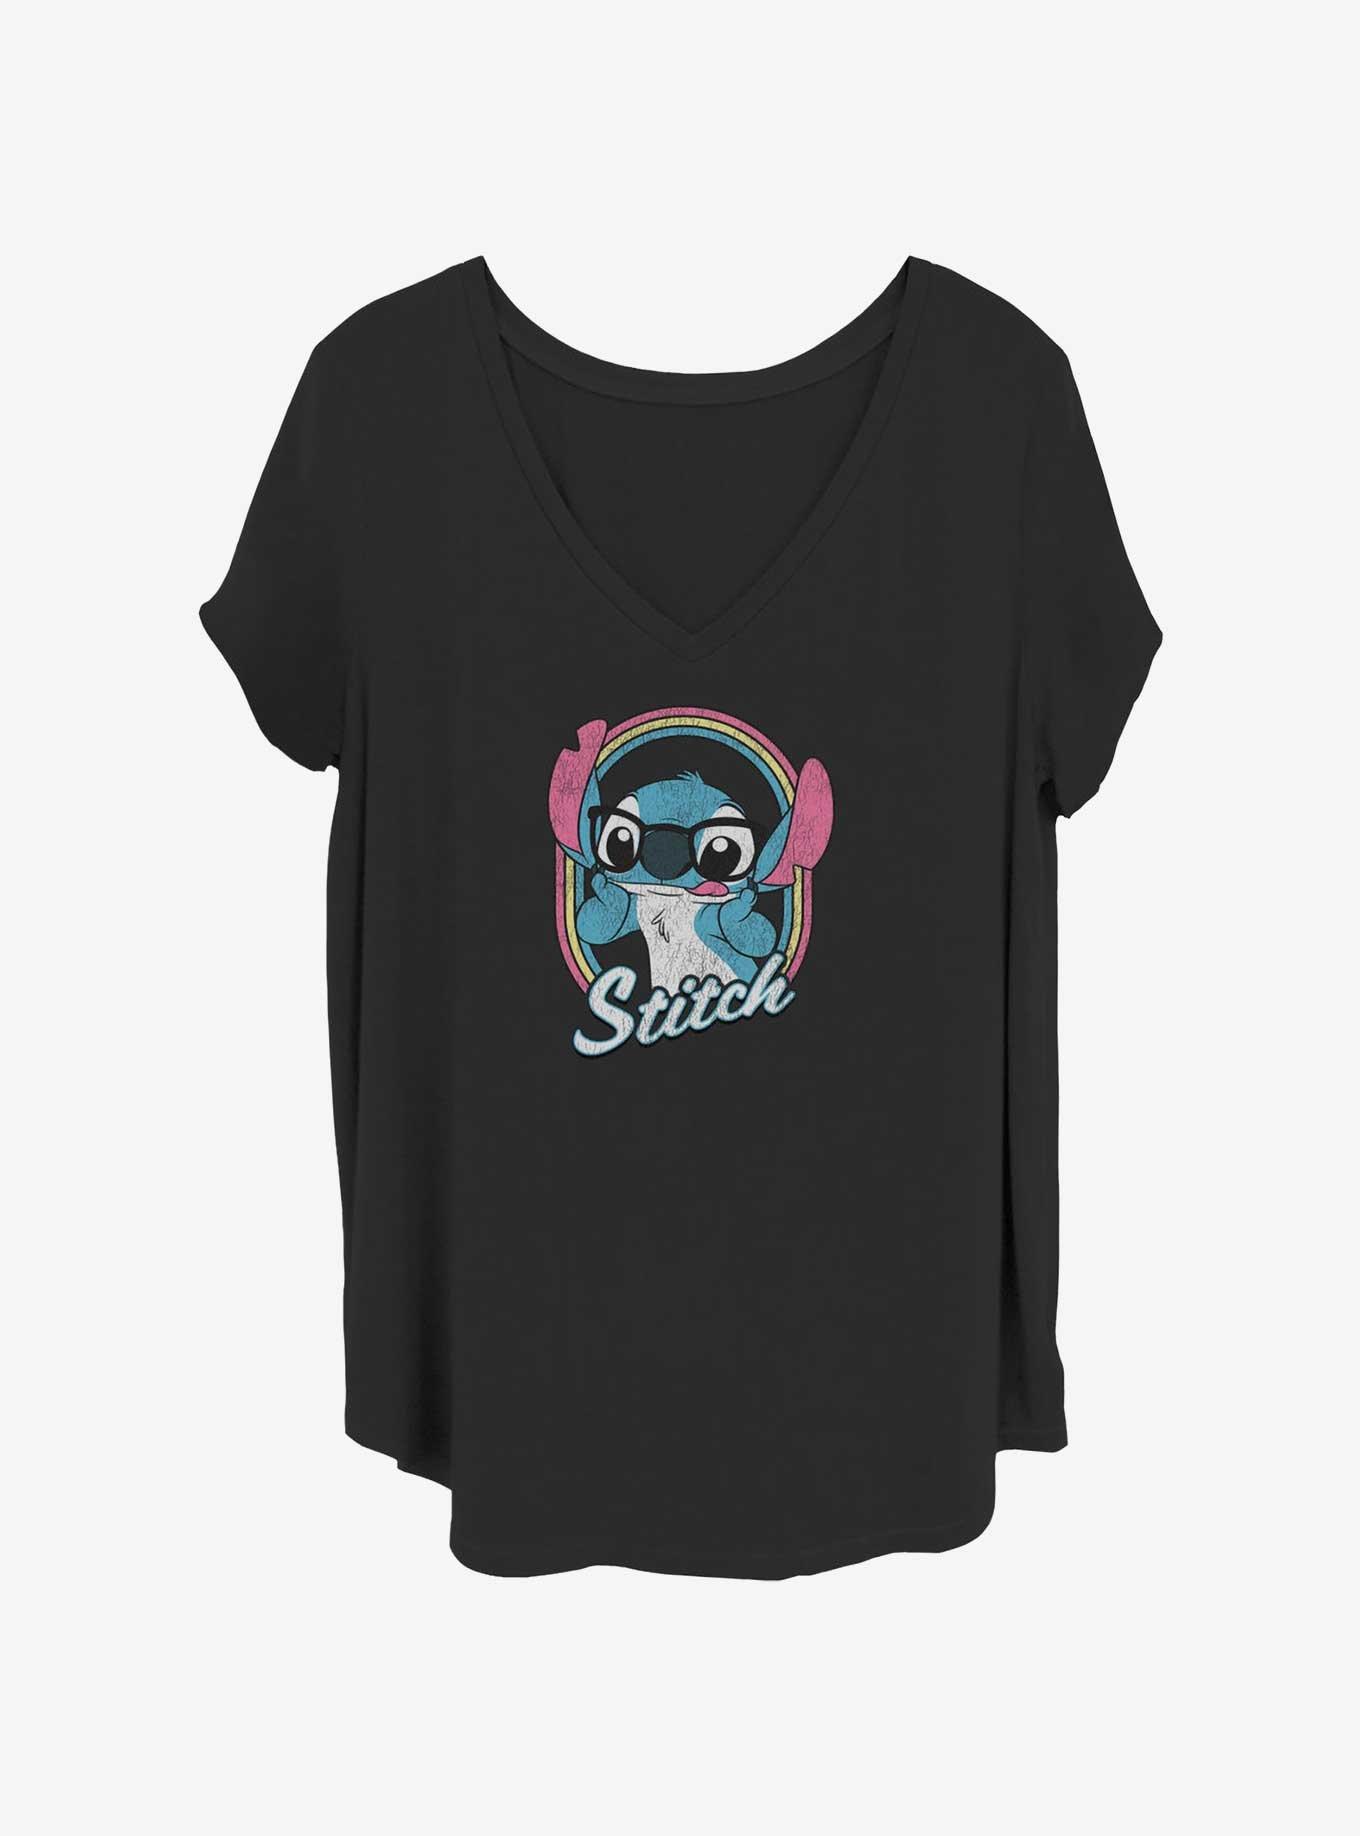 Disney Lilo & Stitch Nerdy Girls T-Shirt Plus